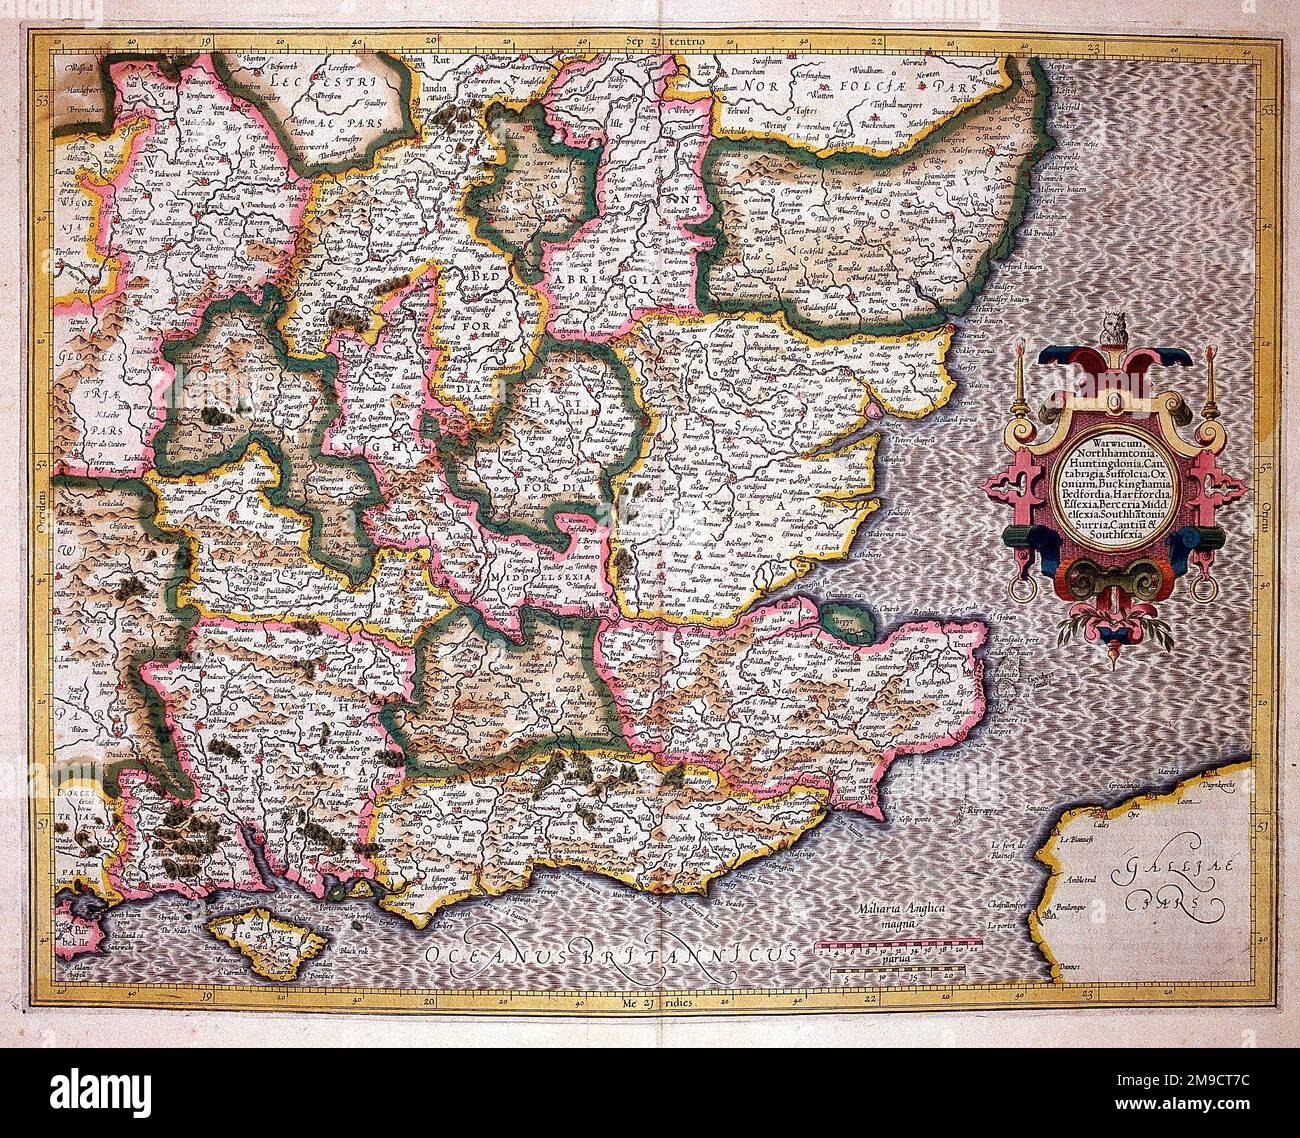 Carte du Sud-est de l'Angleterre datant du 16th siècle Banque D'Images